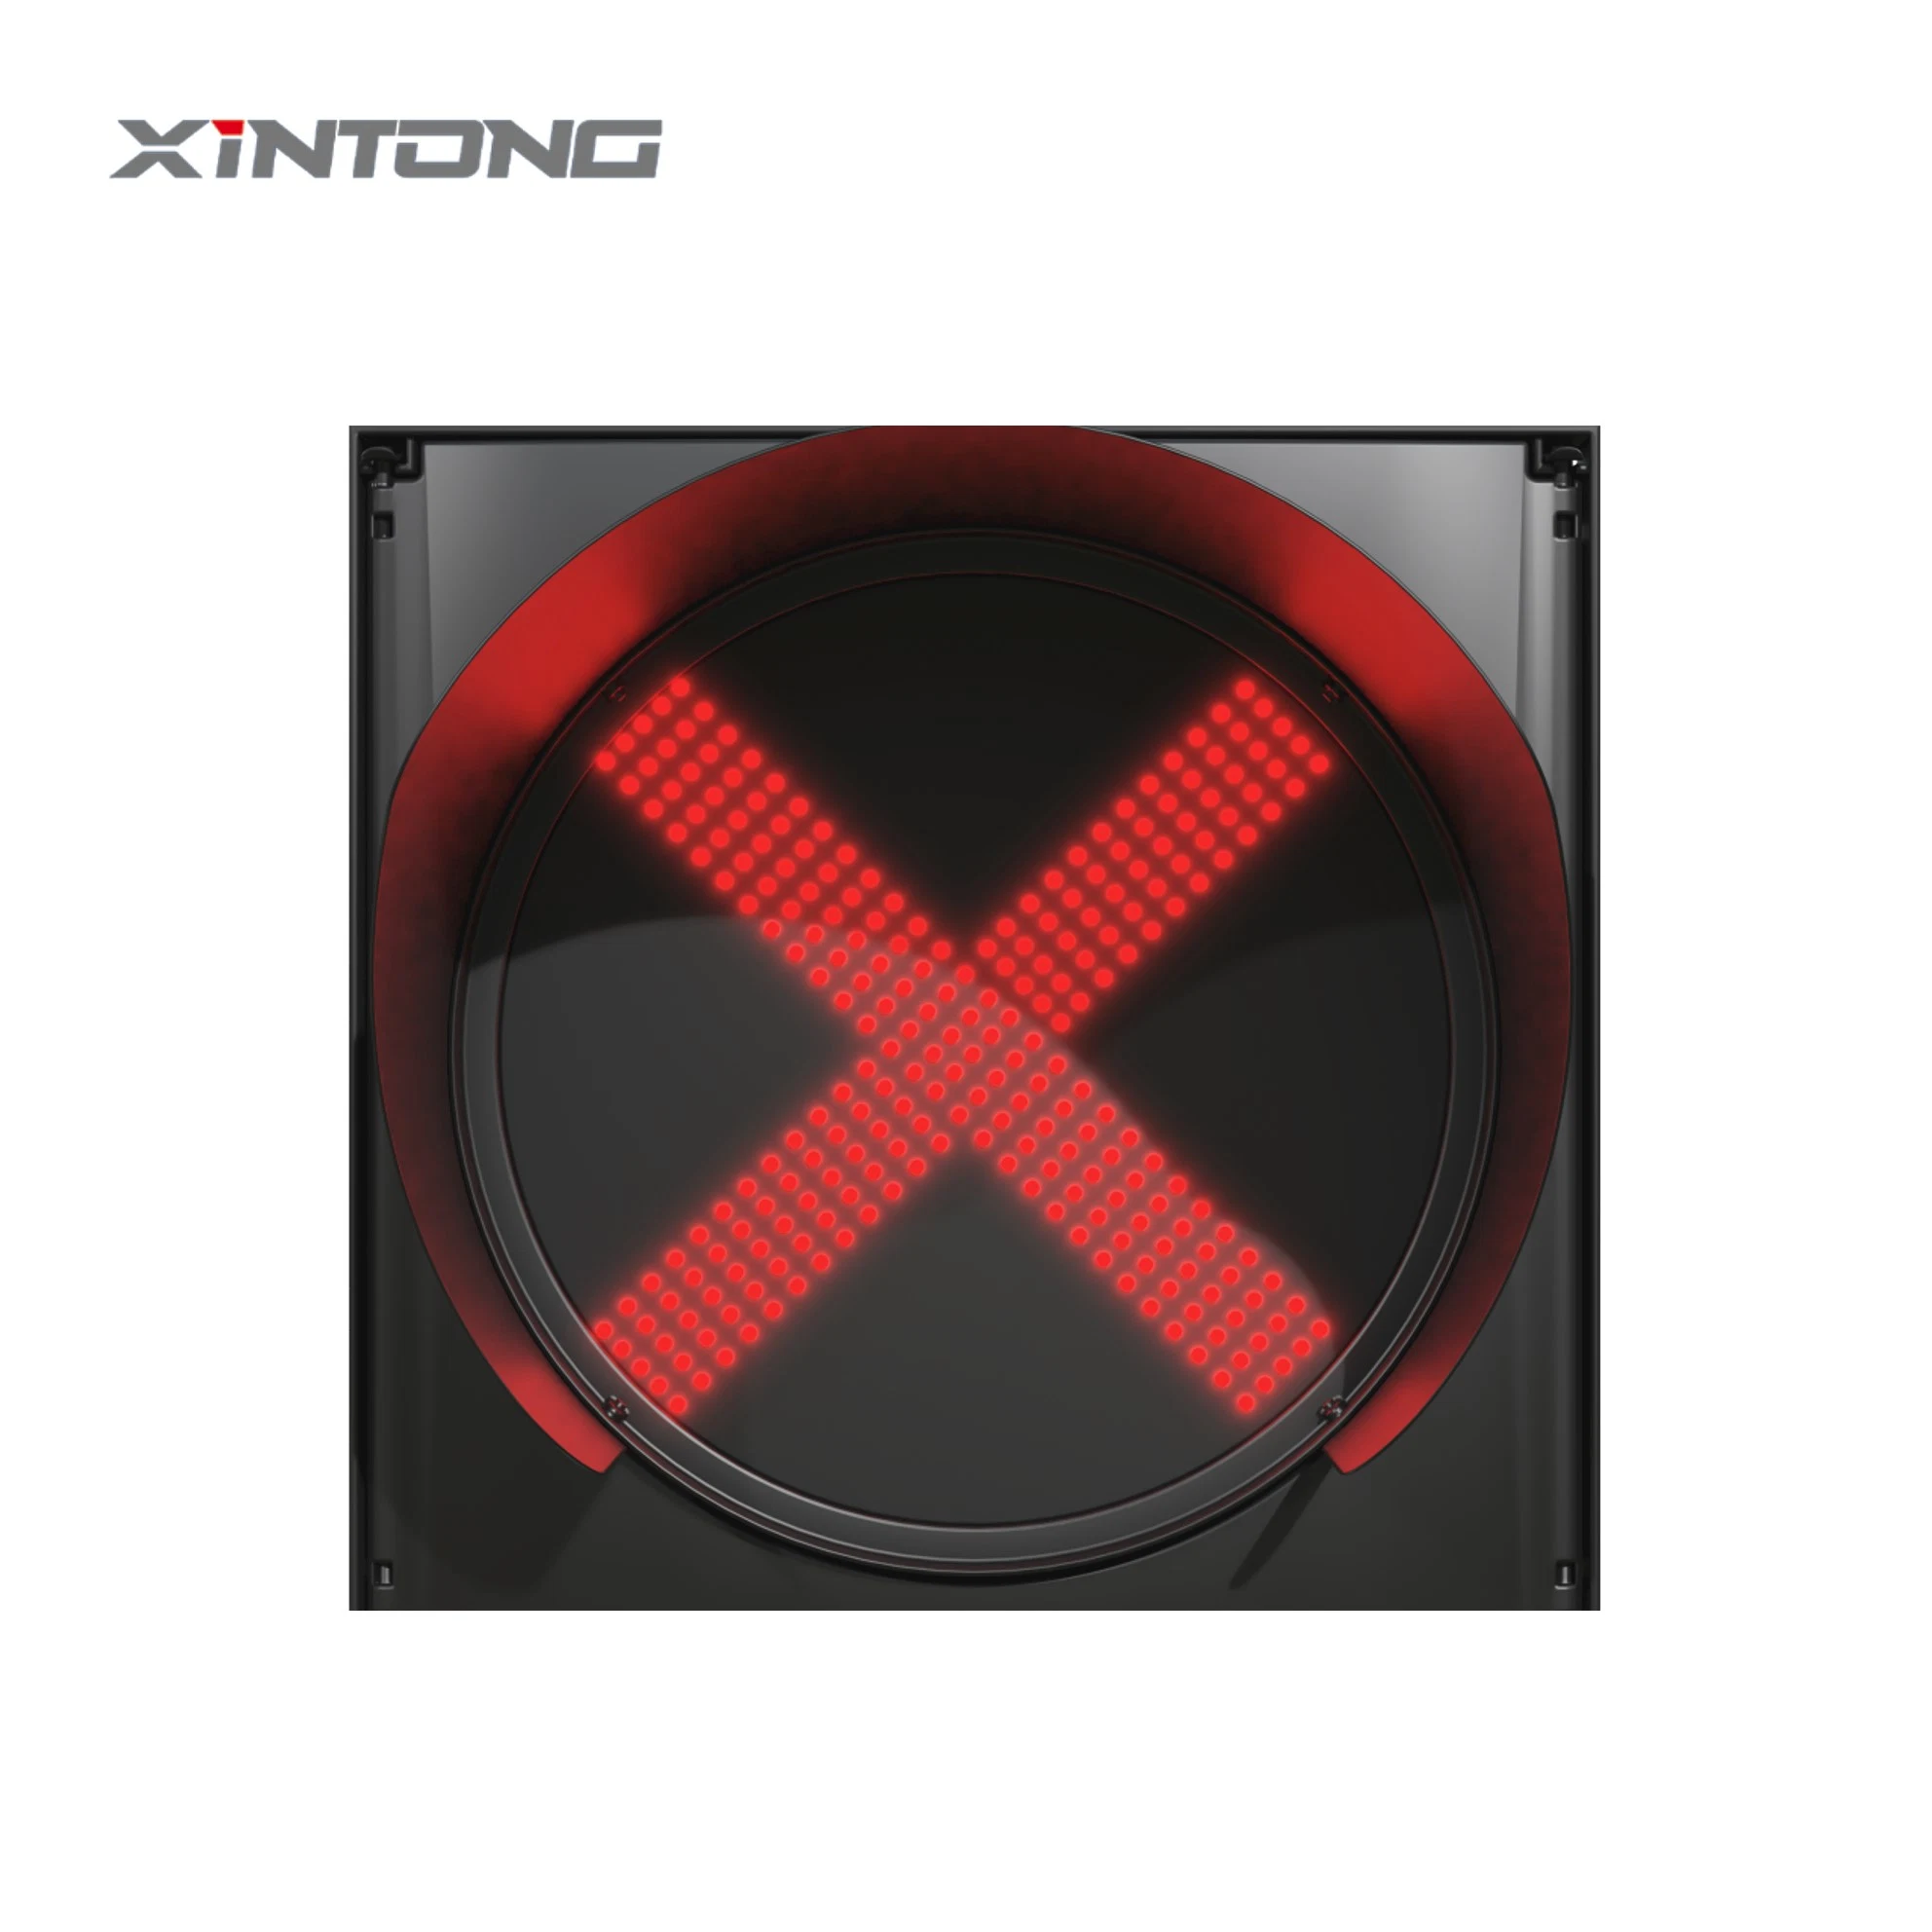 Xinong bietet eine breite Palette von Verkehrssignalprodukten an Erfüllen Sie Unterschiedliche Anforderungen